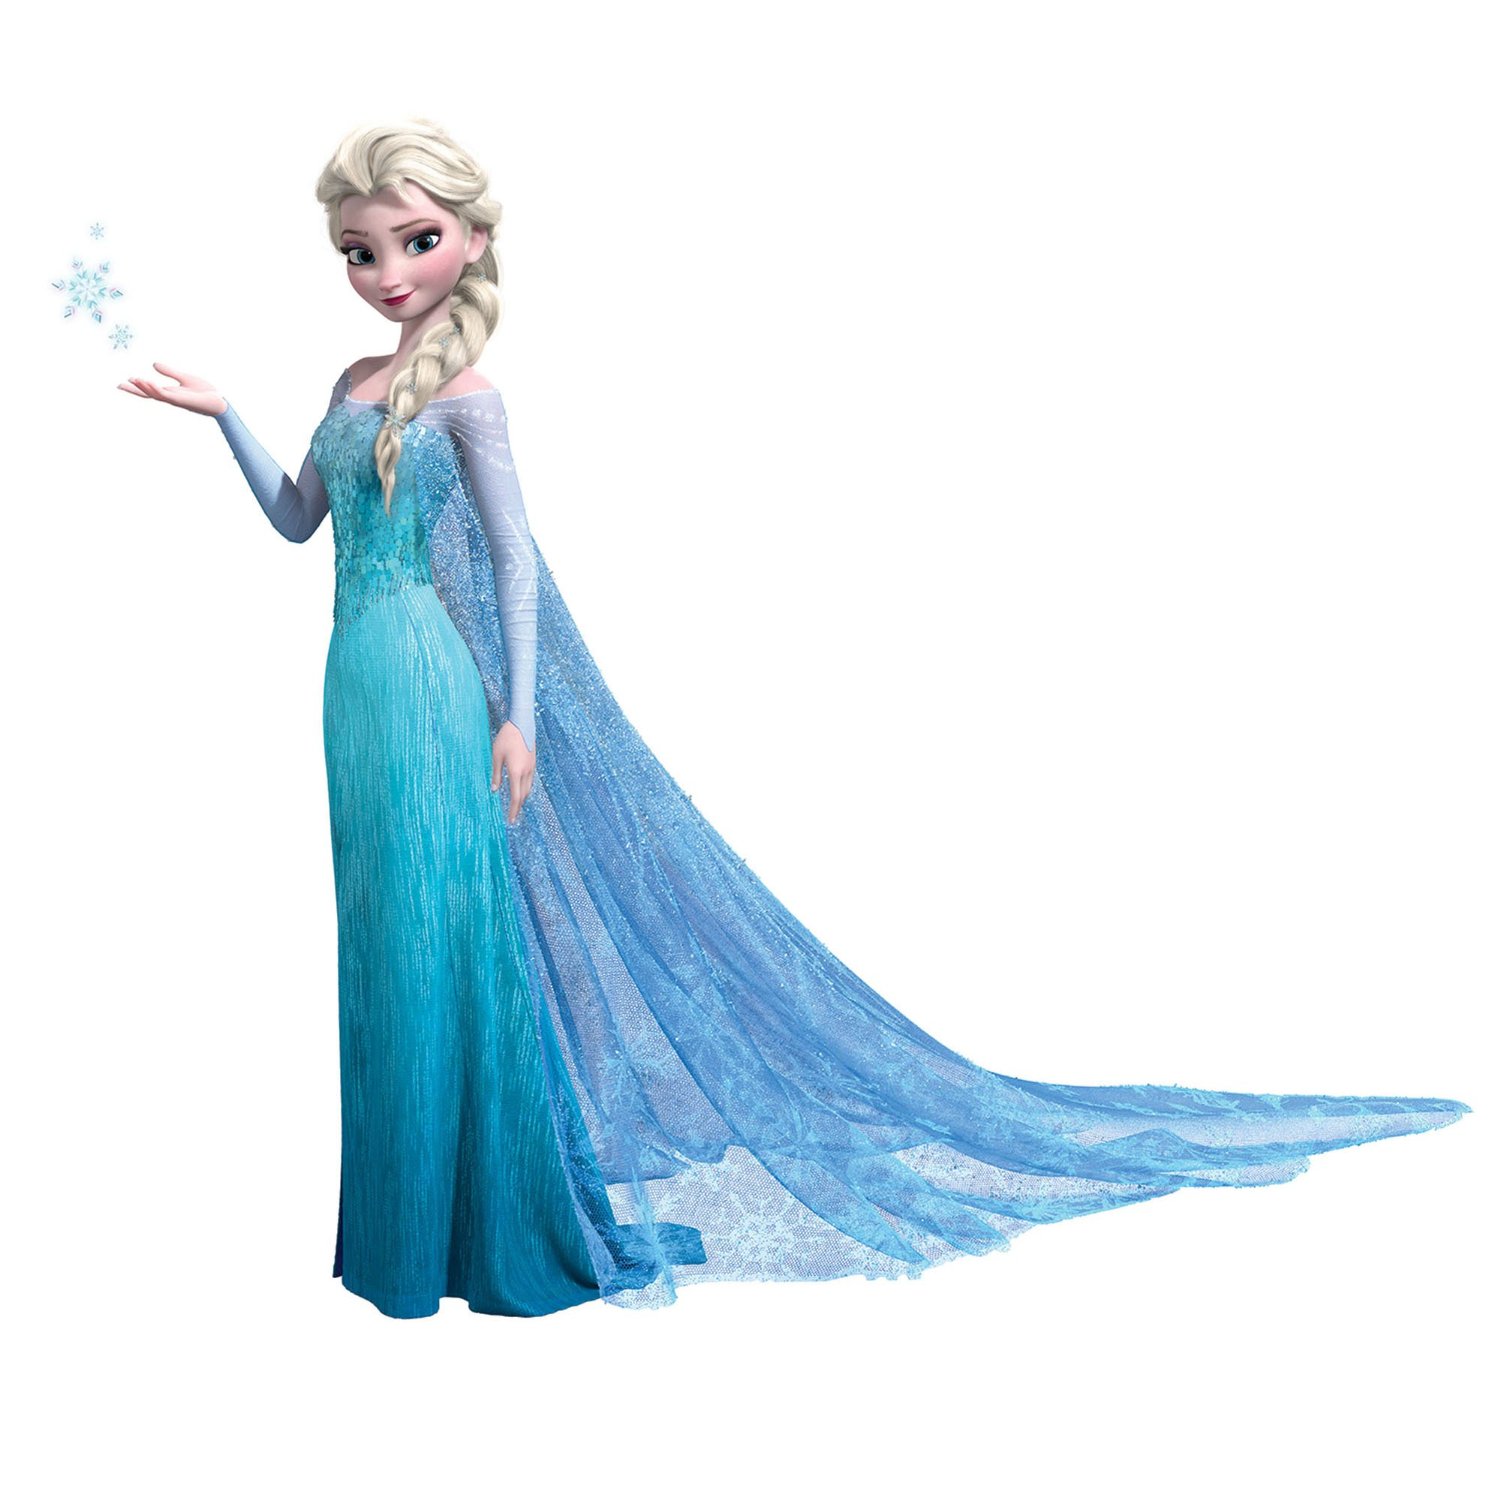 Png free download best. Elsa clipart frozen theme